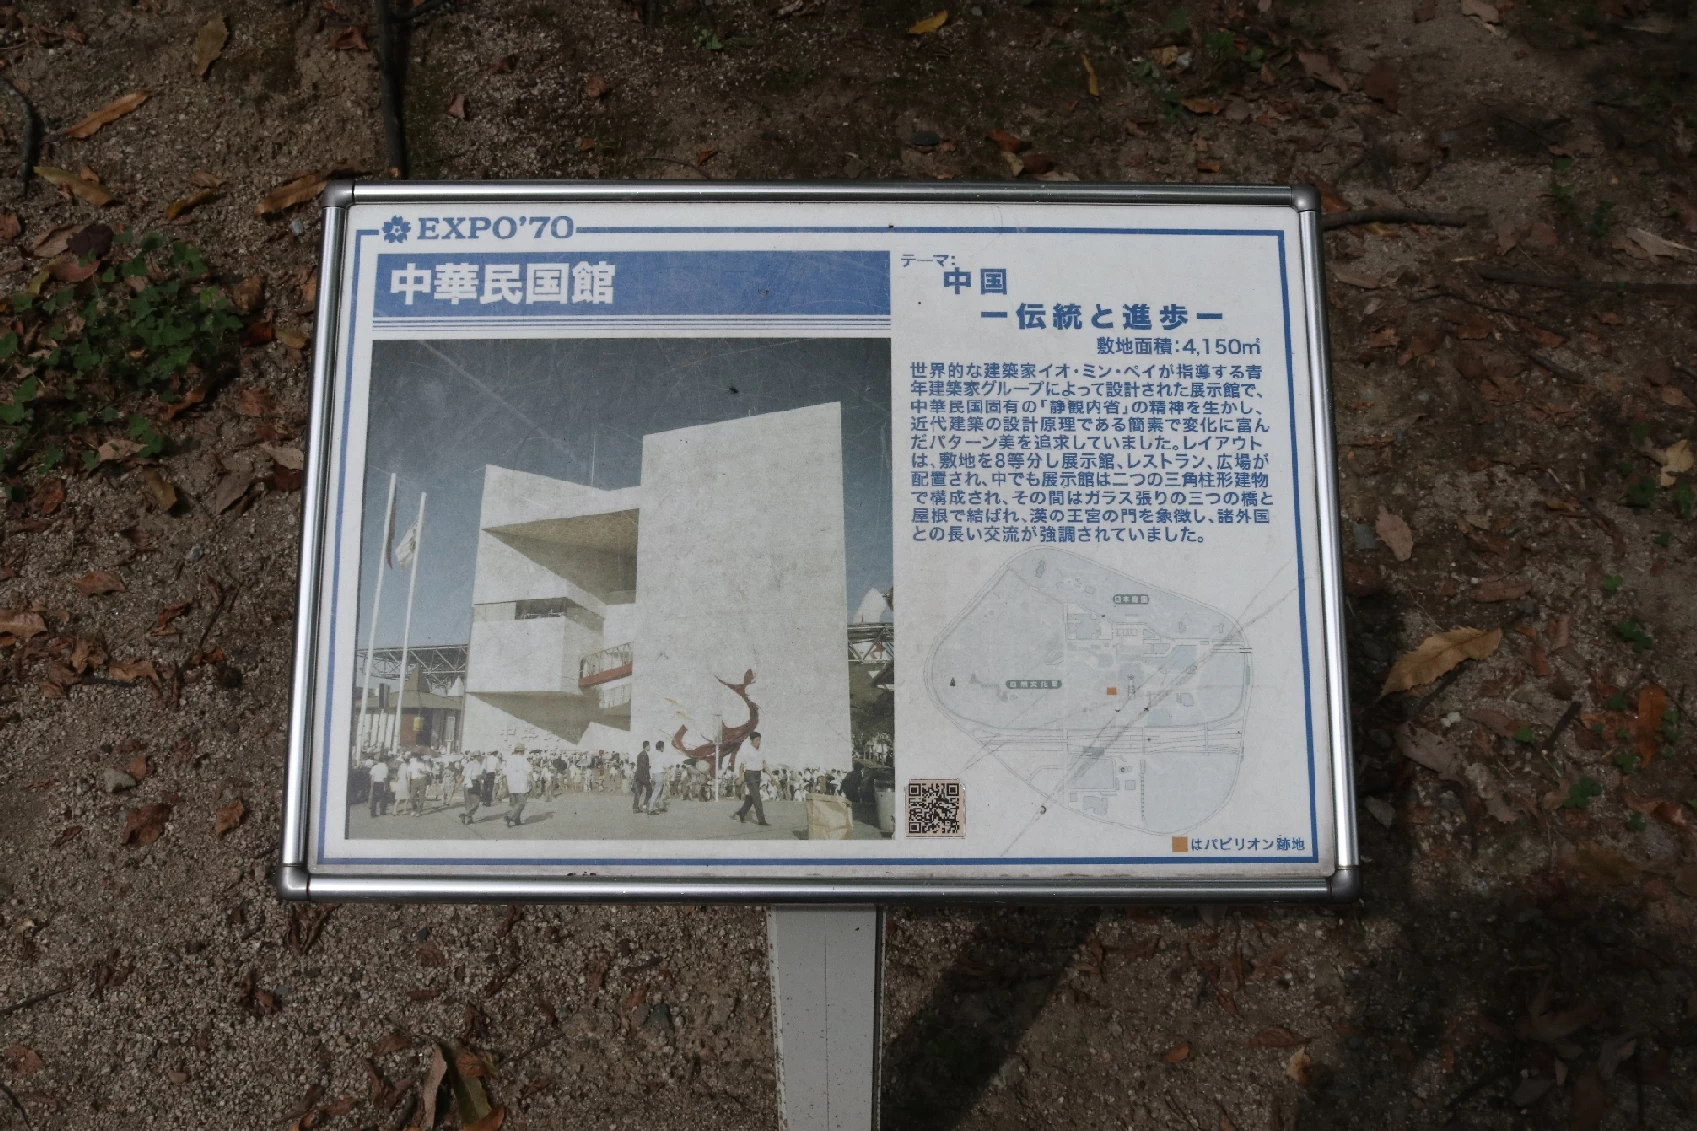 日本吹田市萬博紀念公園中華民國館原址現況（圖片來源：許麗玉提供）-圖片